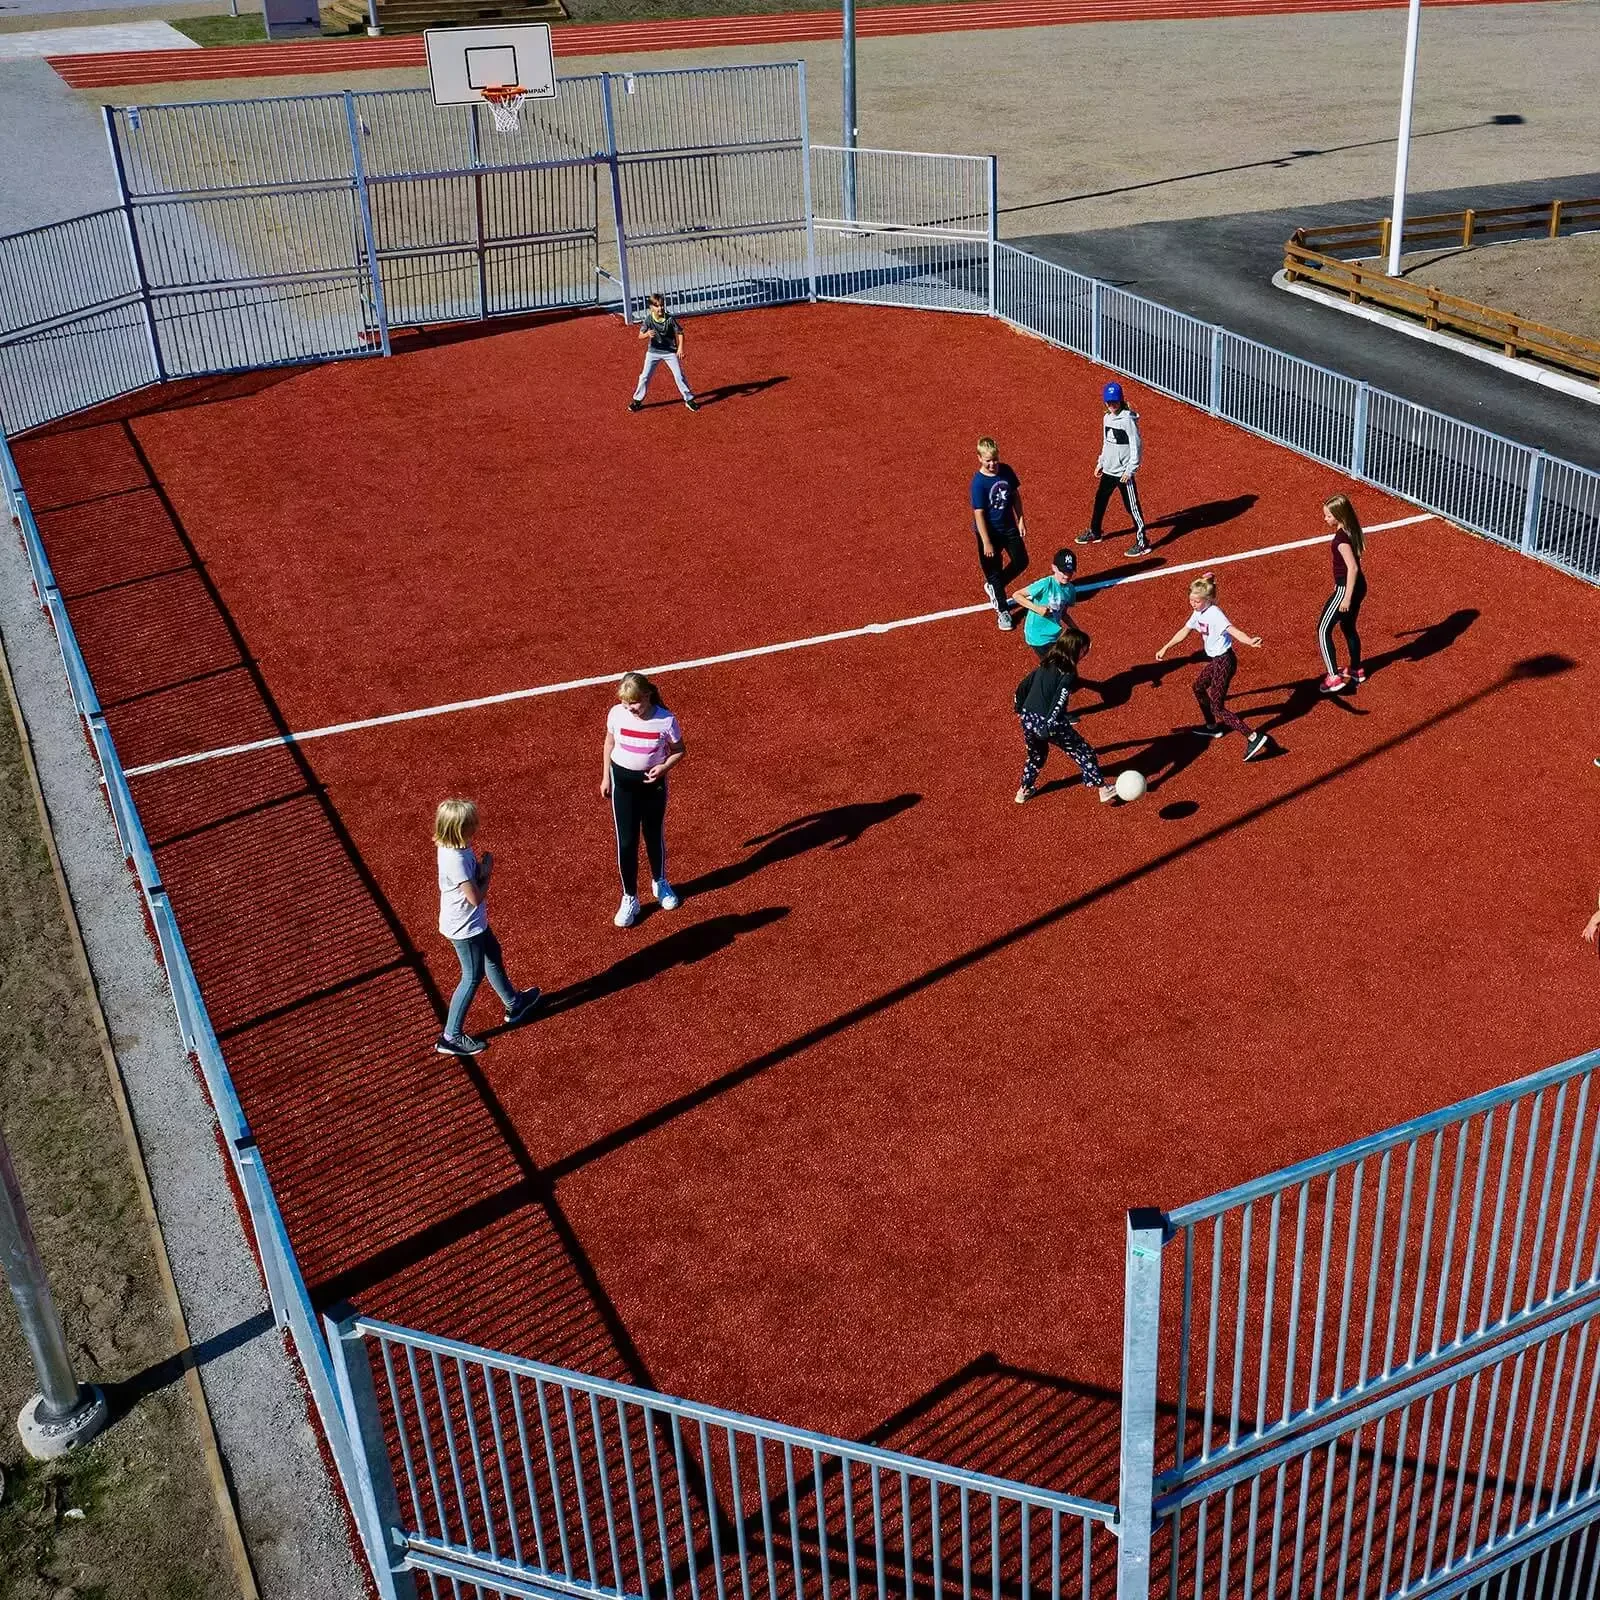 dzieci w szkole średniej grające w piłkę nożną na boisku multisportowym